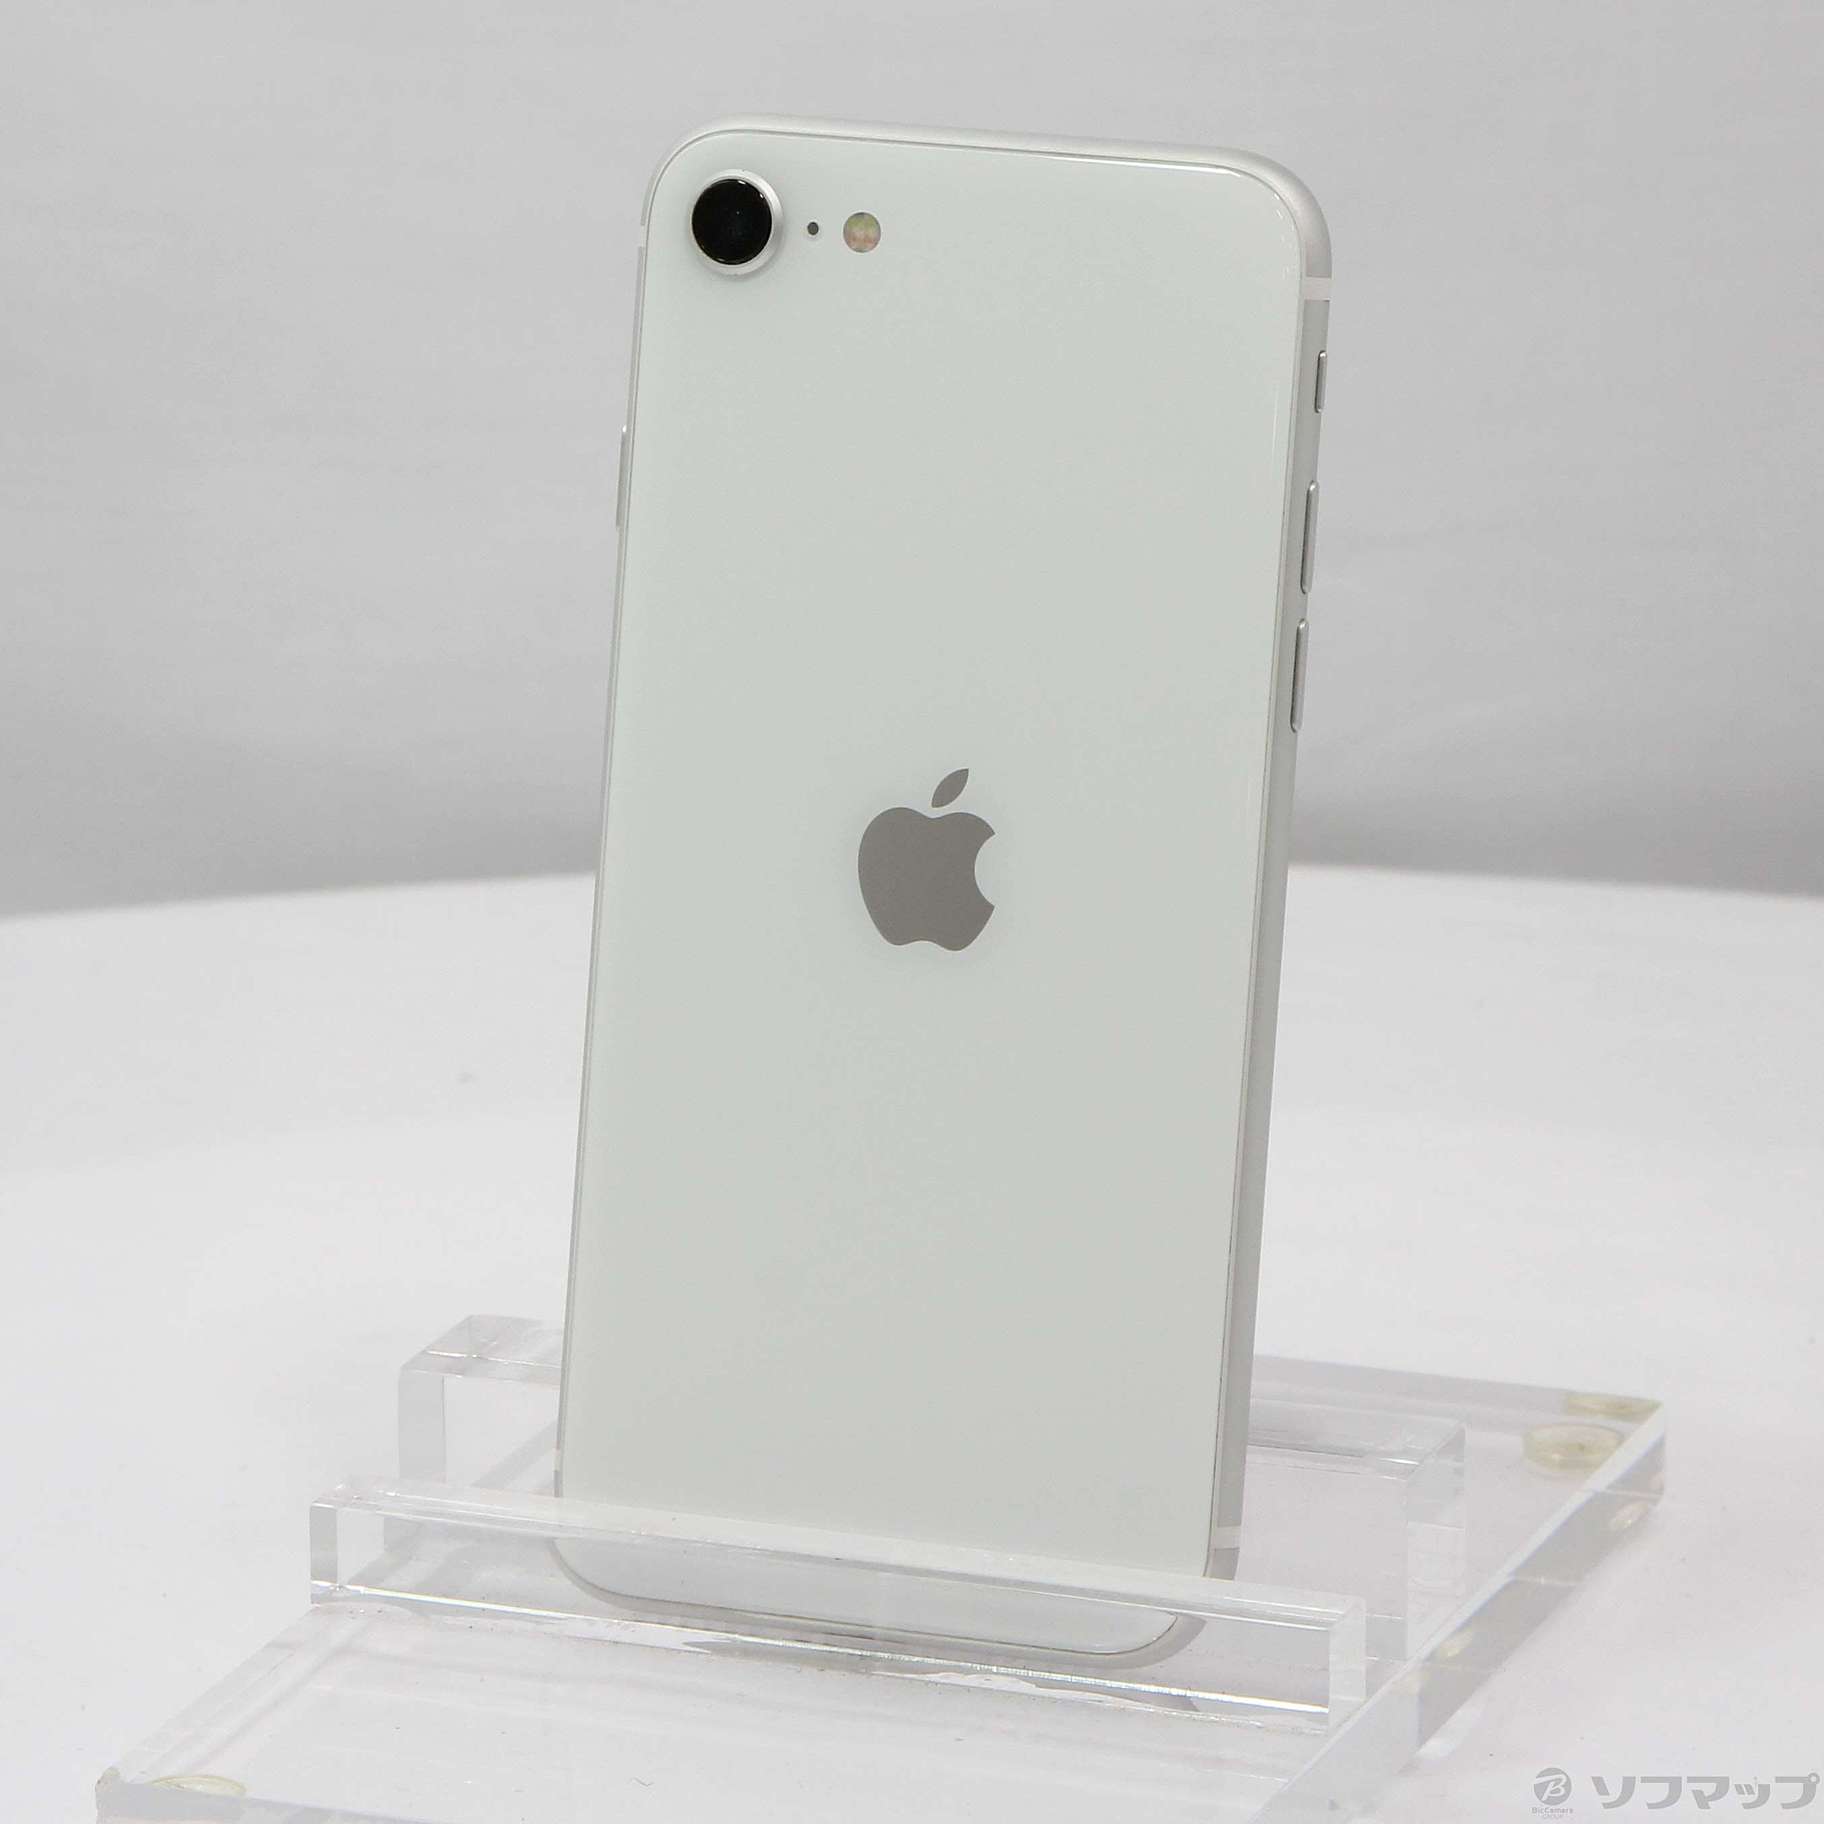 アップル iPhoneSE 第2世代 128GB ホワイト